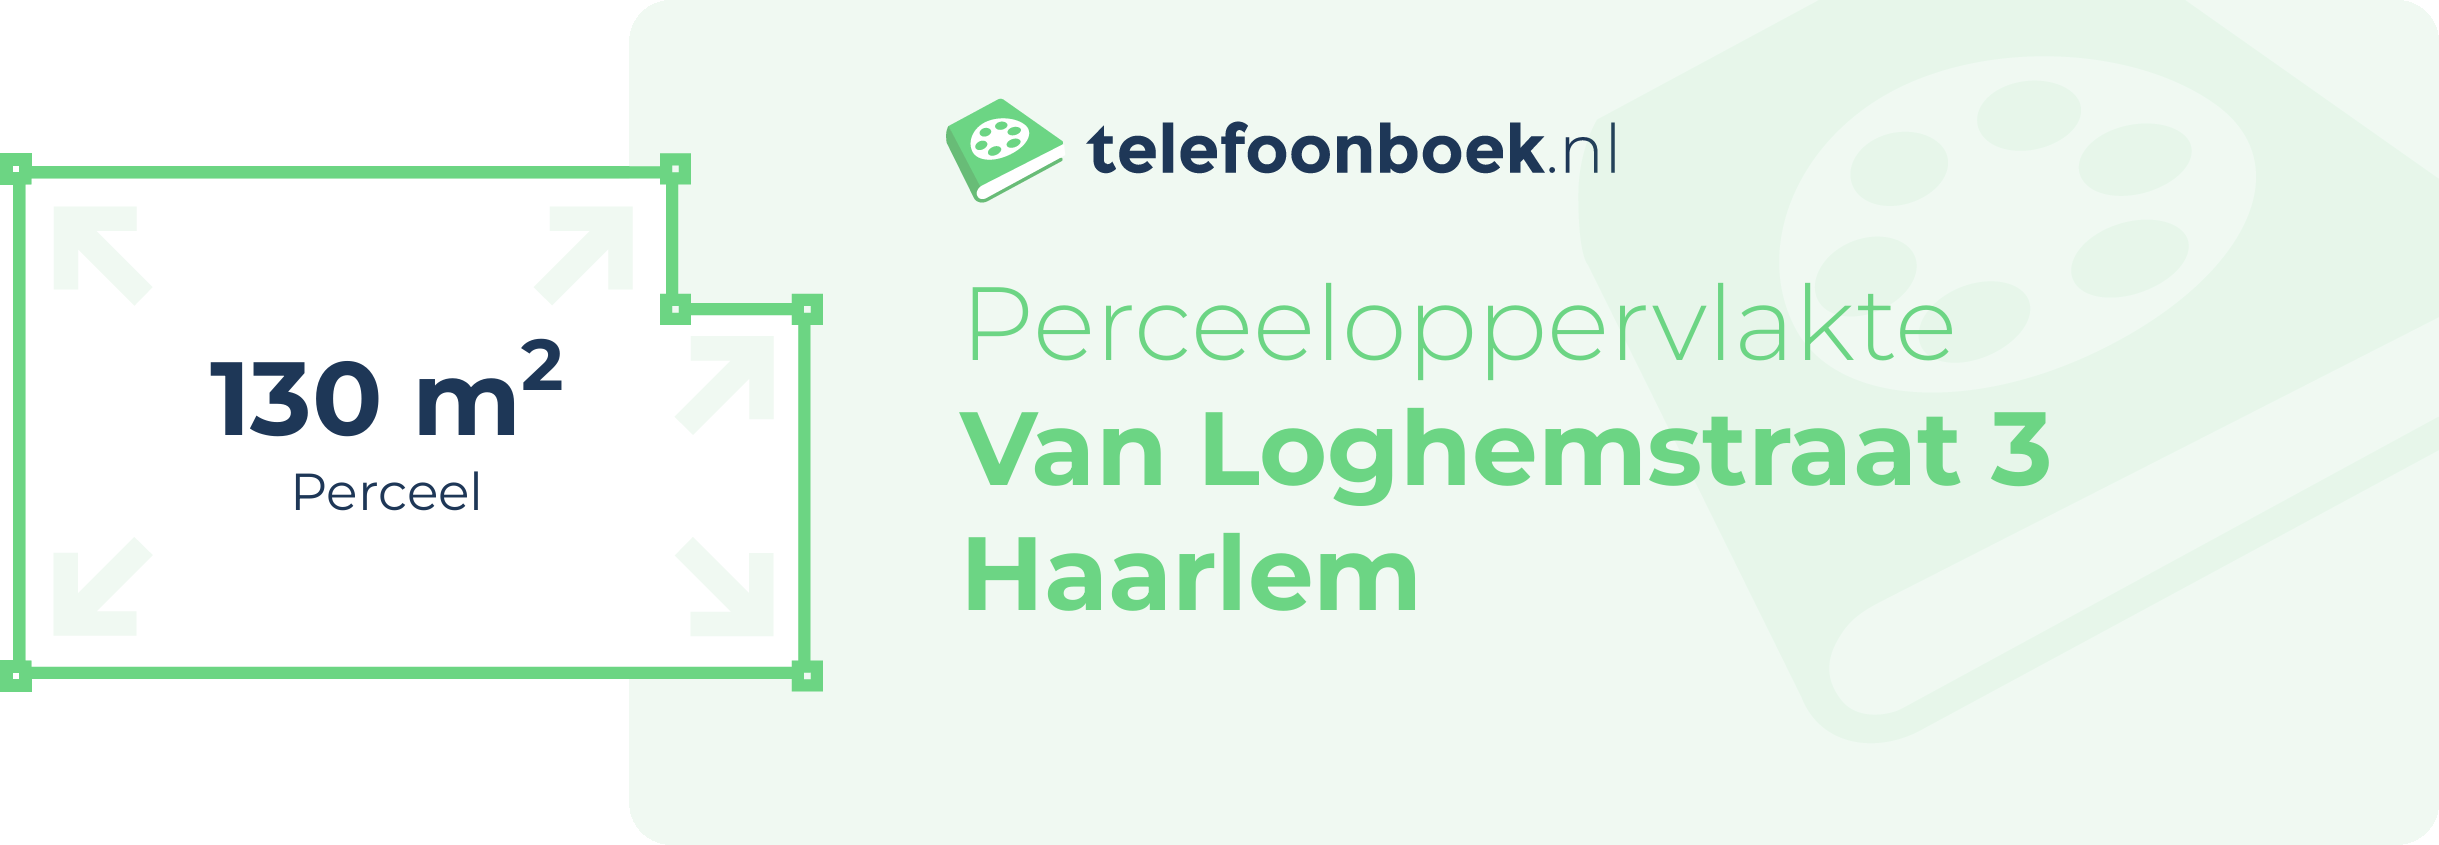 Perceeloppervlakte Van Loghemstraat 3 Haarlem